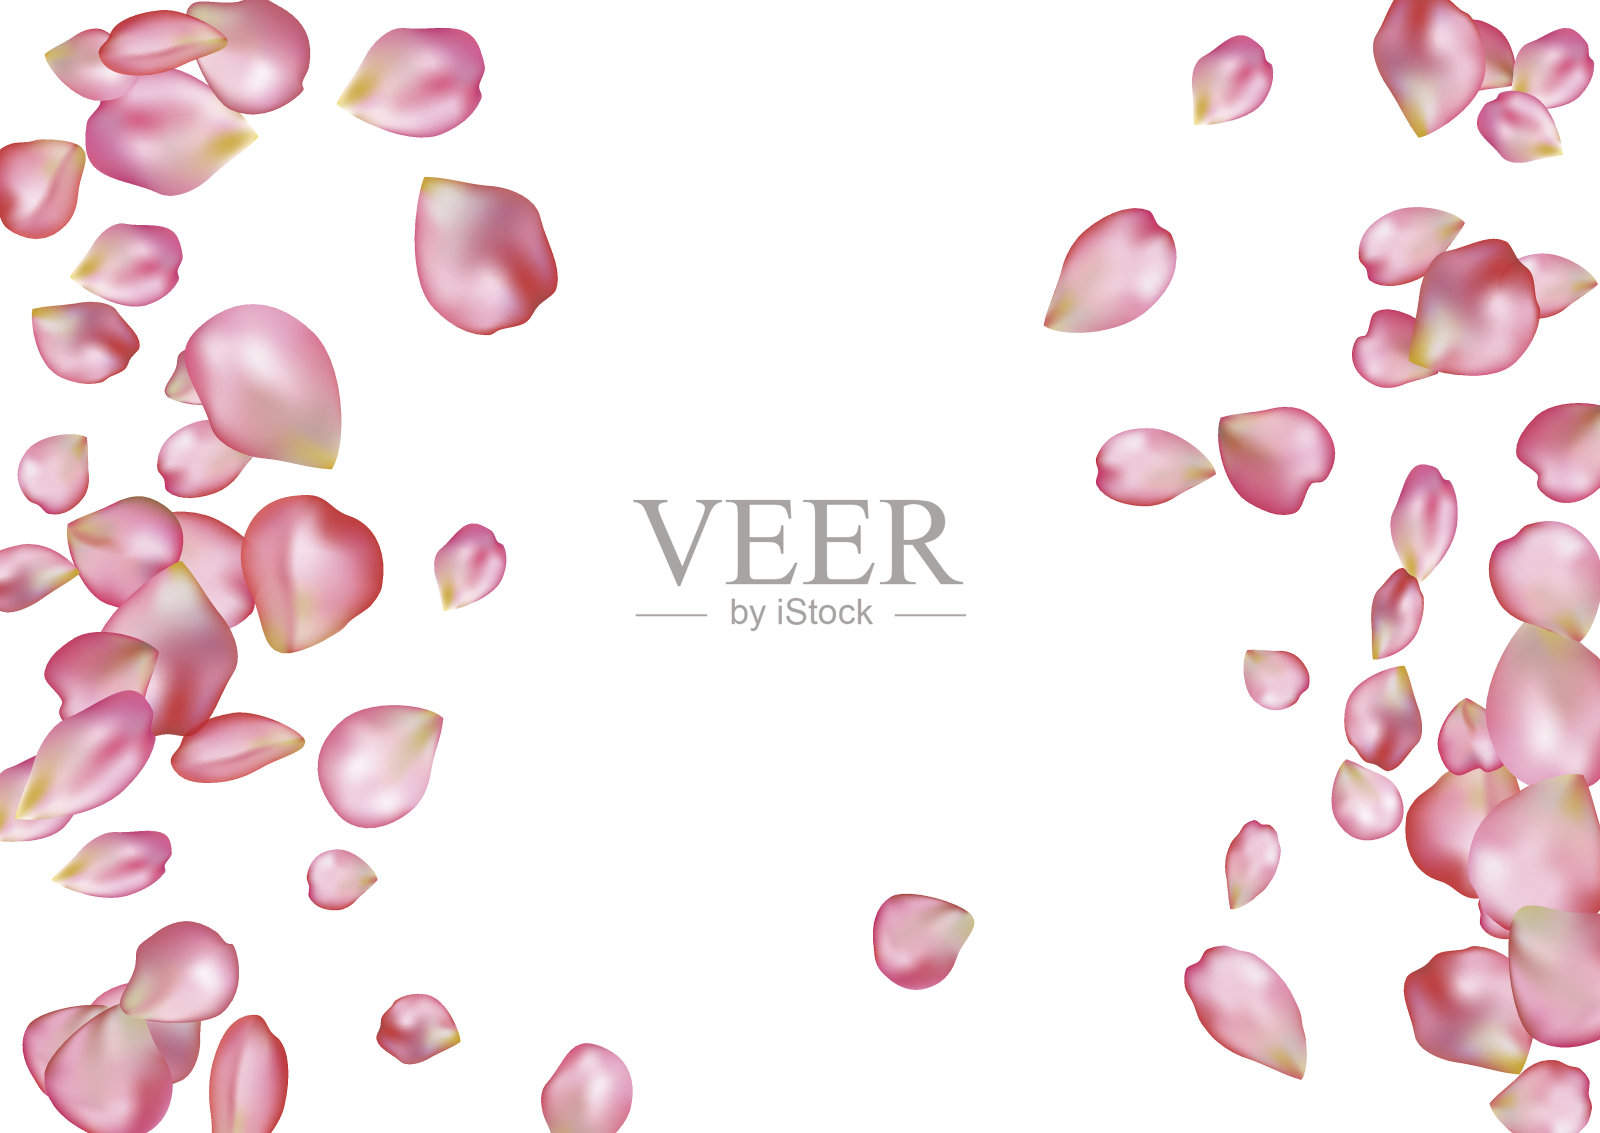 抽象背景与飞舞的粉色玫瑰花瓣。设计元素图片